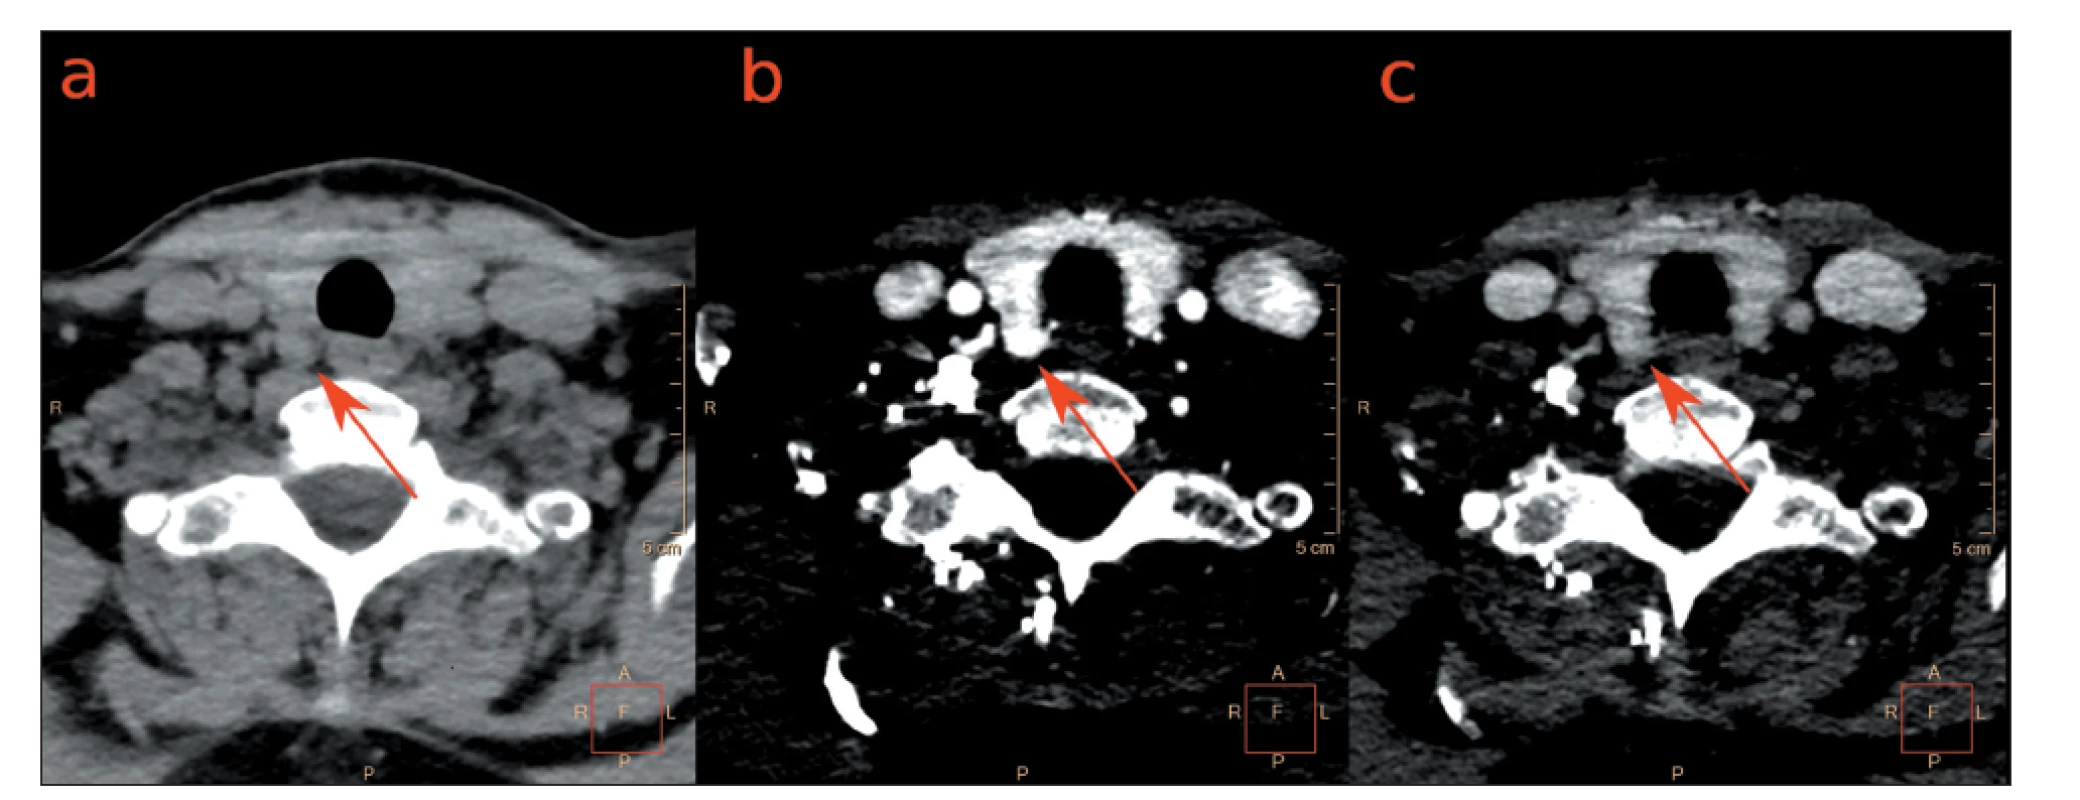 Fázové axiální 4D CT obrazy u pacientky s primární hyperparatyreózou.<br>
Dorzálně od pravého laloku štítné žlázy se zobrazuje uzel (a) nativně hypodenzní, (b) v arteriální fázi hyperdenzní, (c) ve venózní fázi prakticky
isodenzní s parenchymem štítné žlázy. Operačně a histologicky potvrzen adenom PT. Obrazy zapůjčeny s laskavostí MUDr. Vladimíra
Černého Ph.D. z Radiologické kliniky VFN Praha.